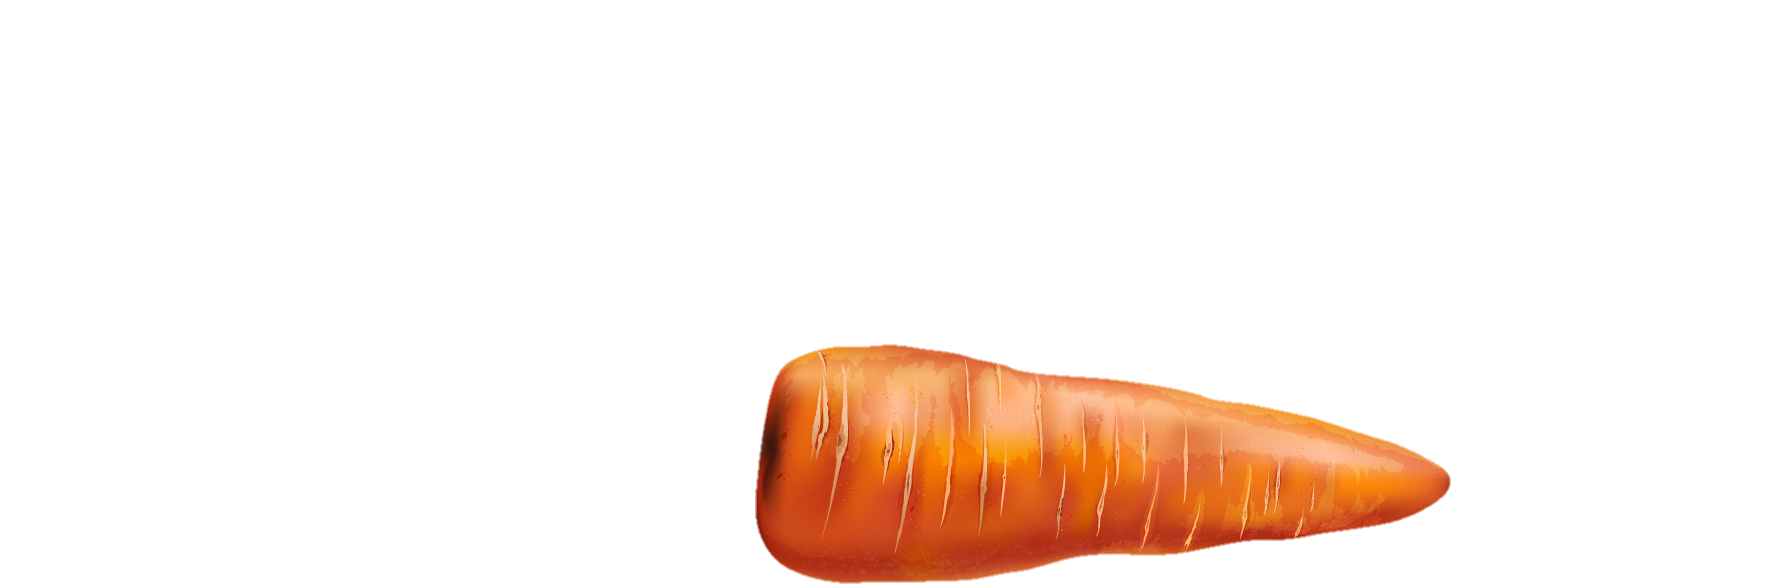 Carrot-25-1